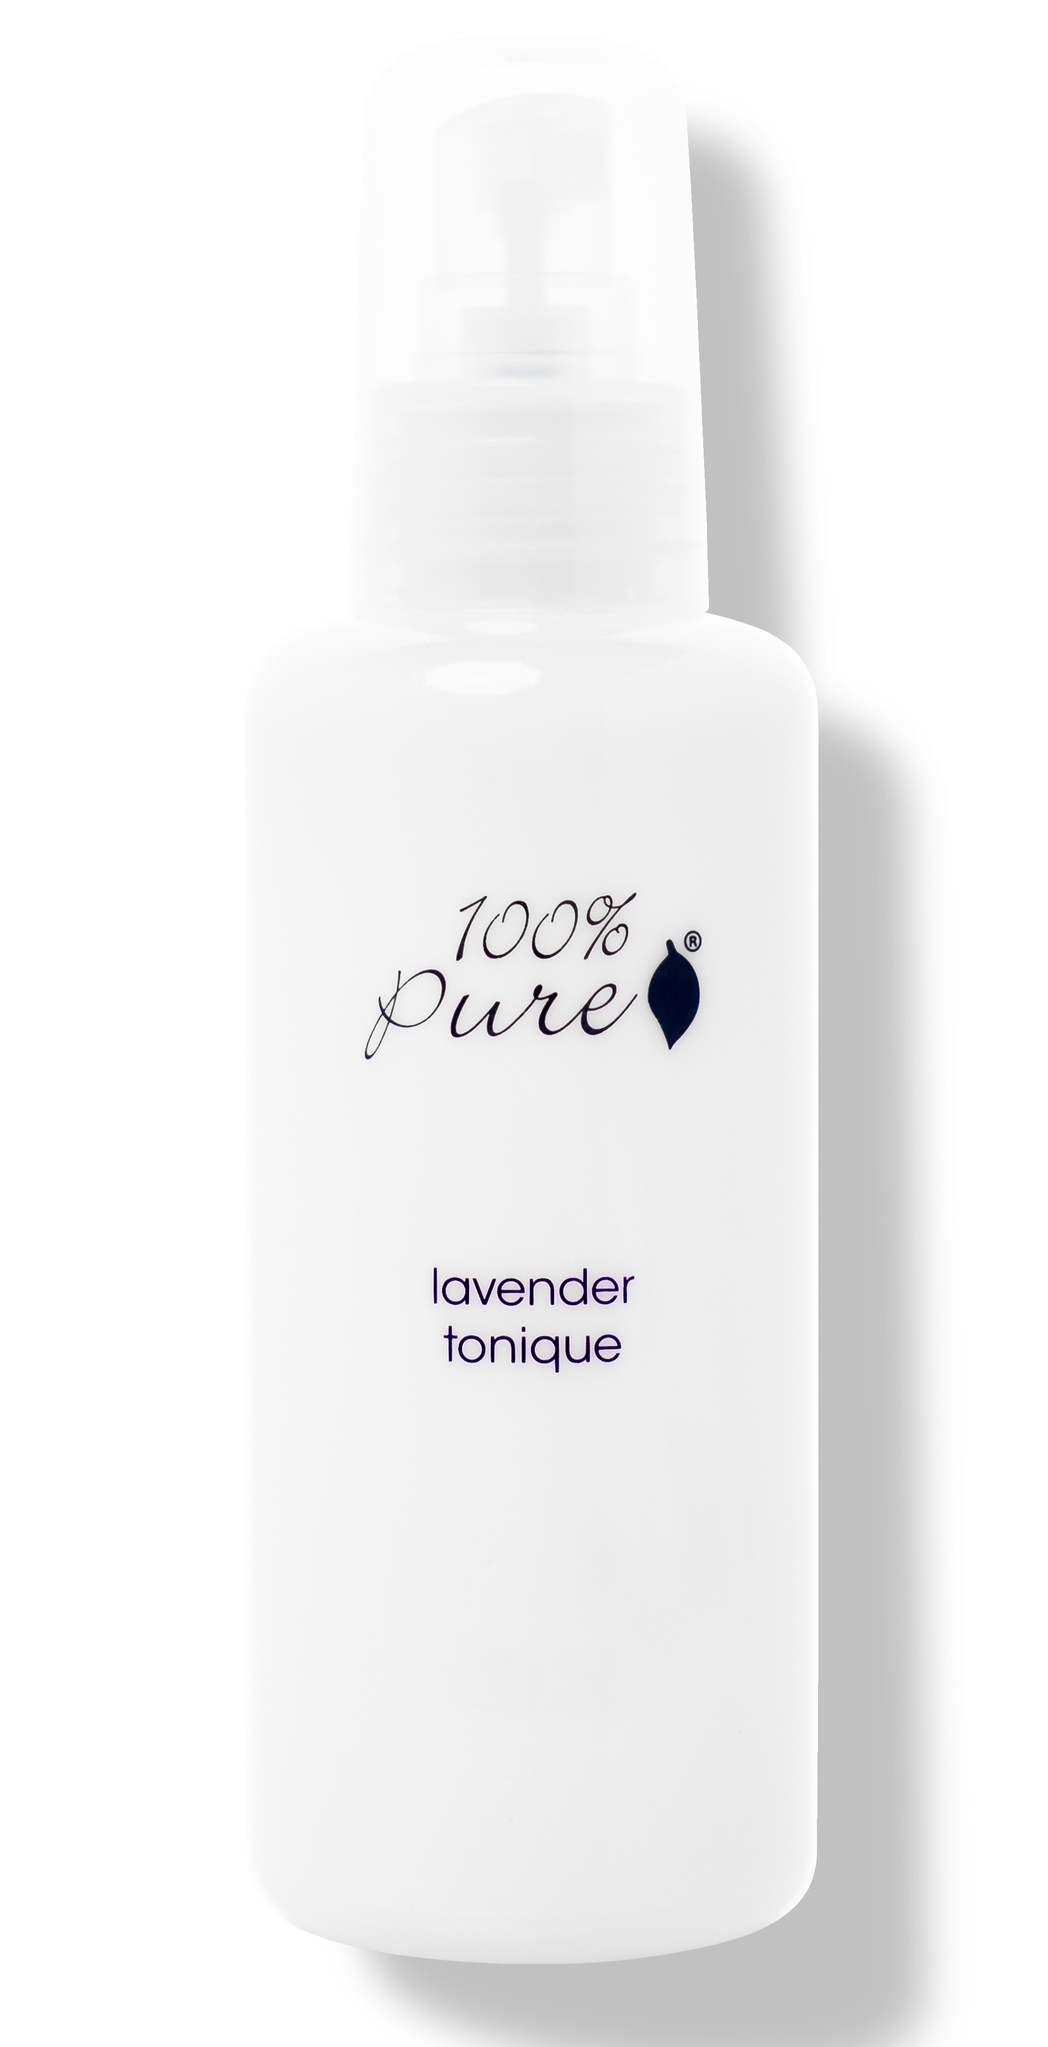 100% Pure Lavender Tonique